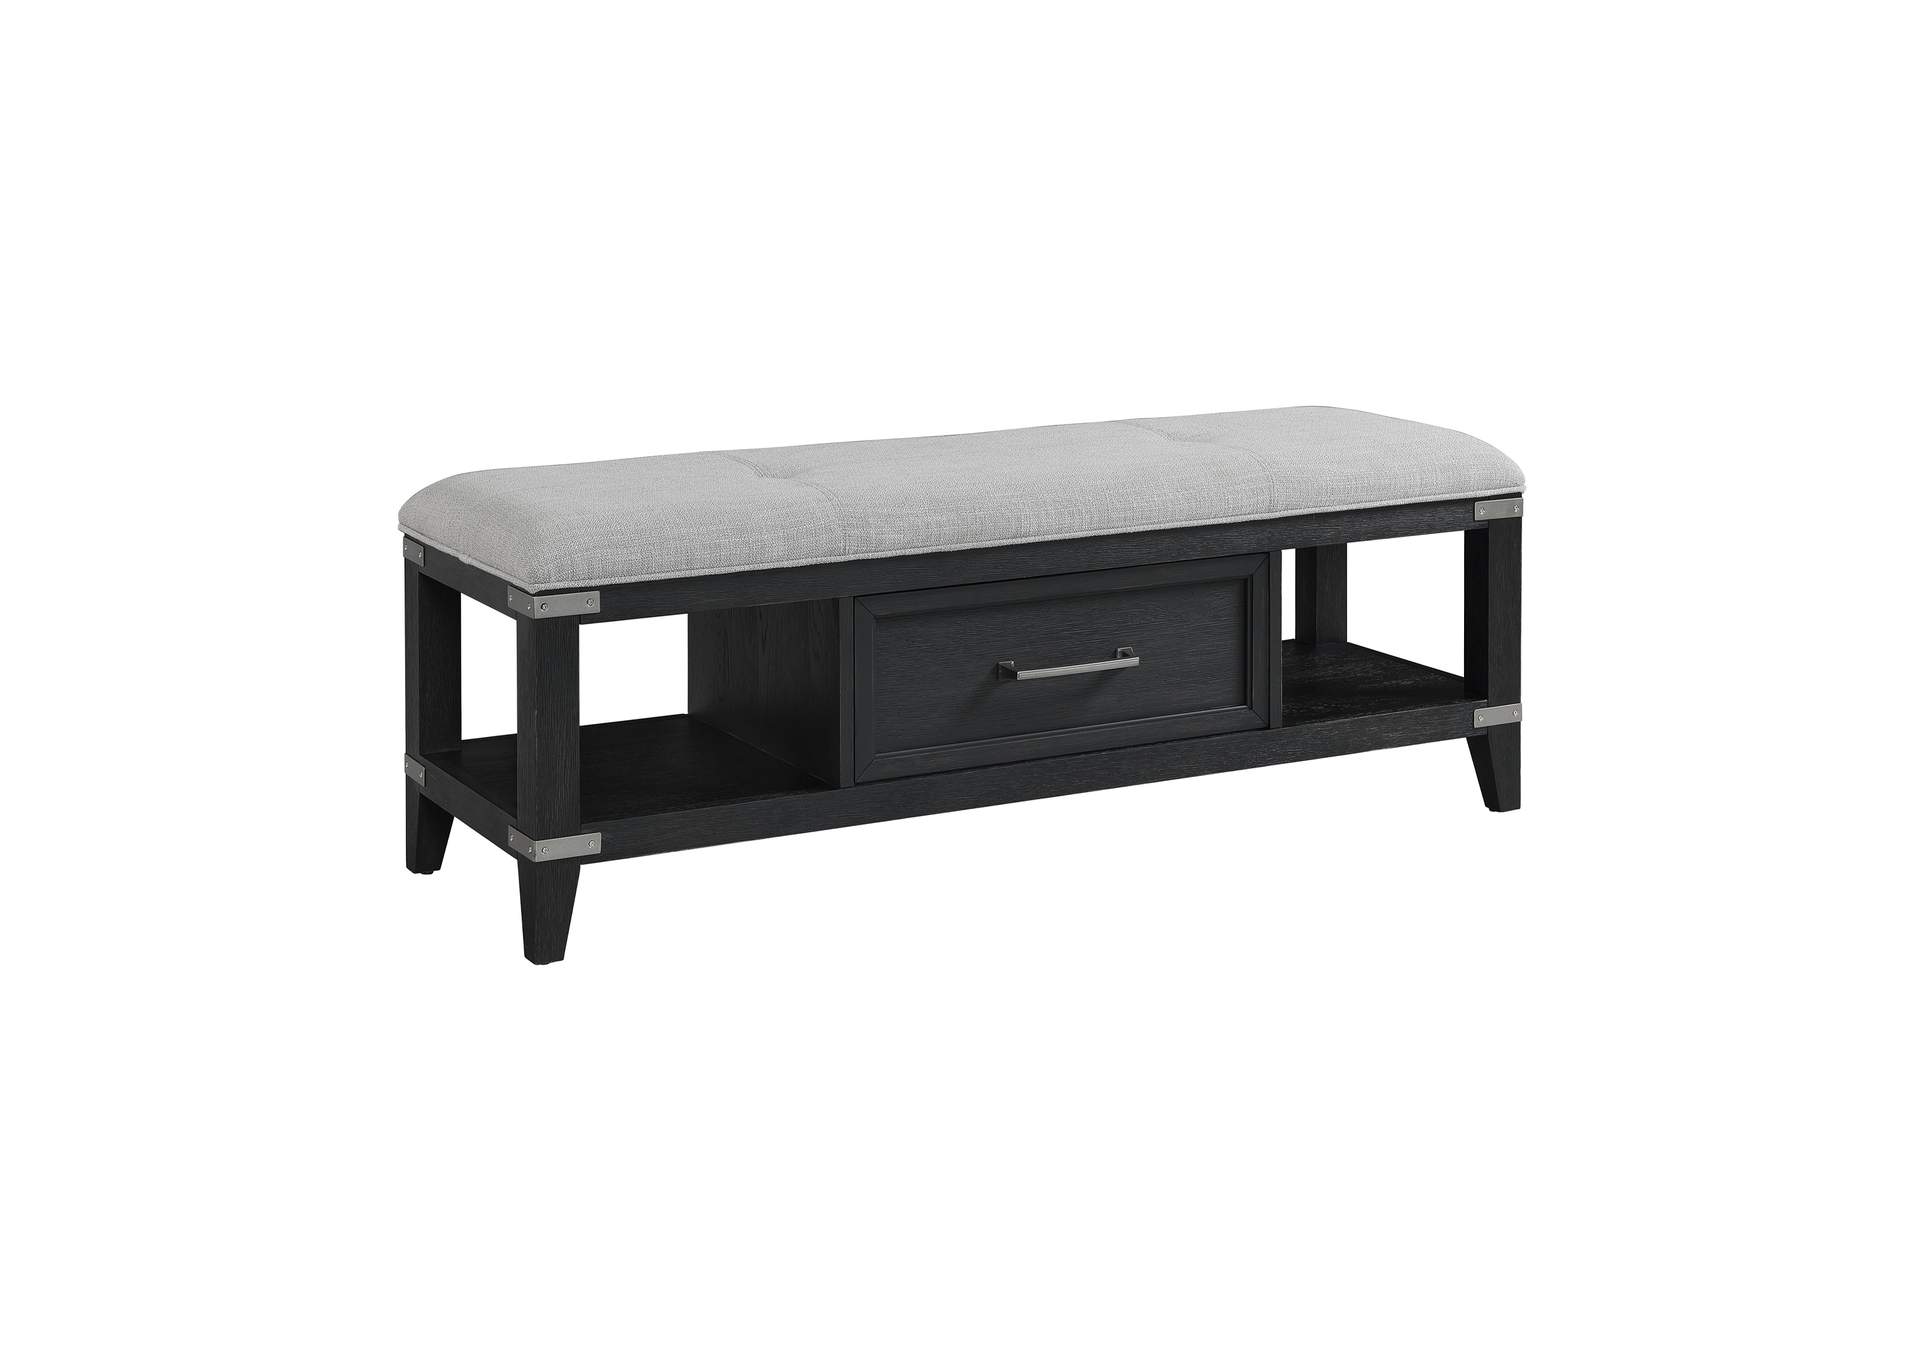 52 Storage Bench W/ Cushion,Intercon Furniture